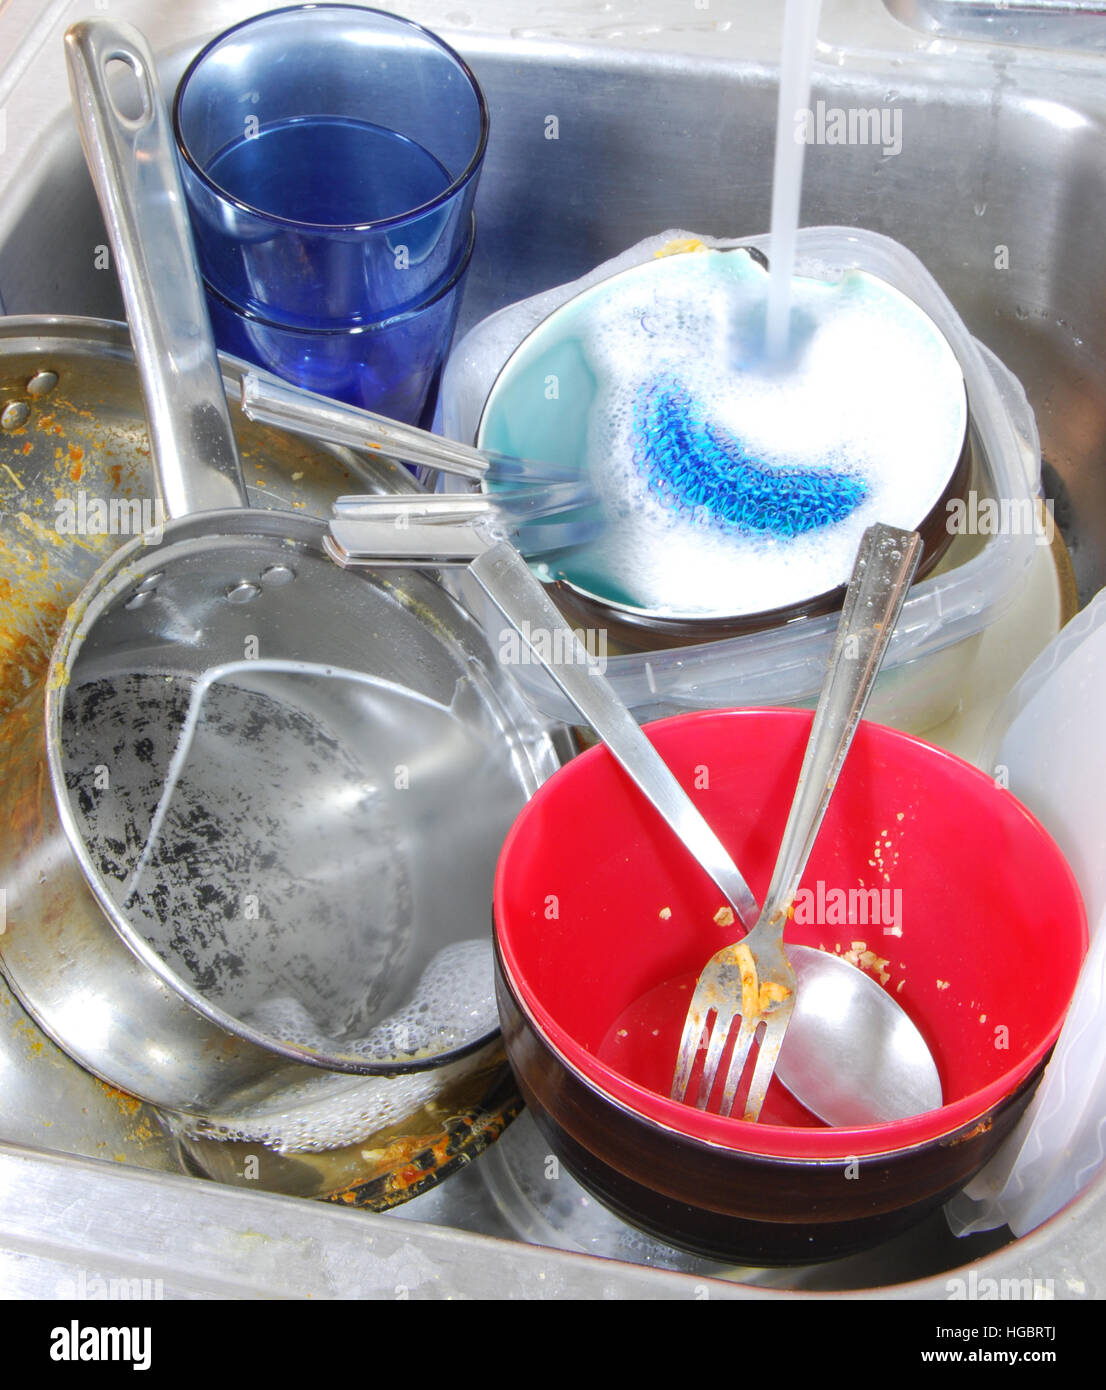 Hacer los quehaceres de la casa. Enorme pila de platos sucios para lavar. Foto de stock